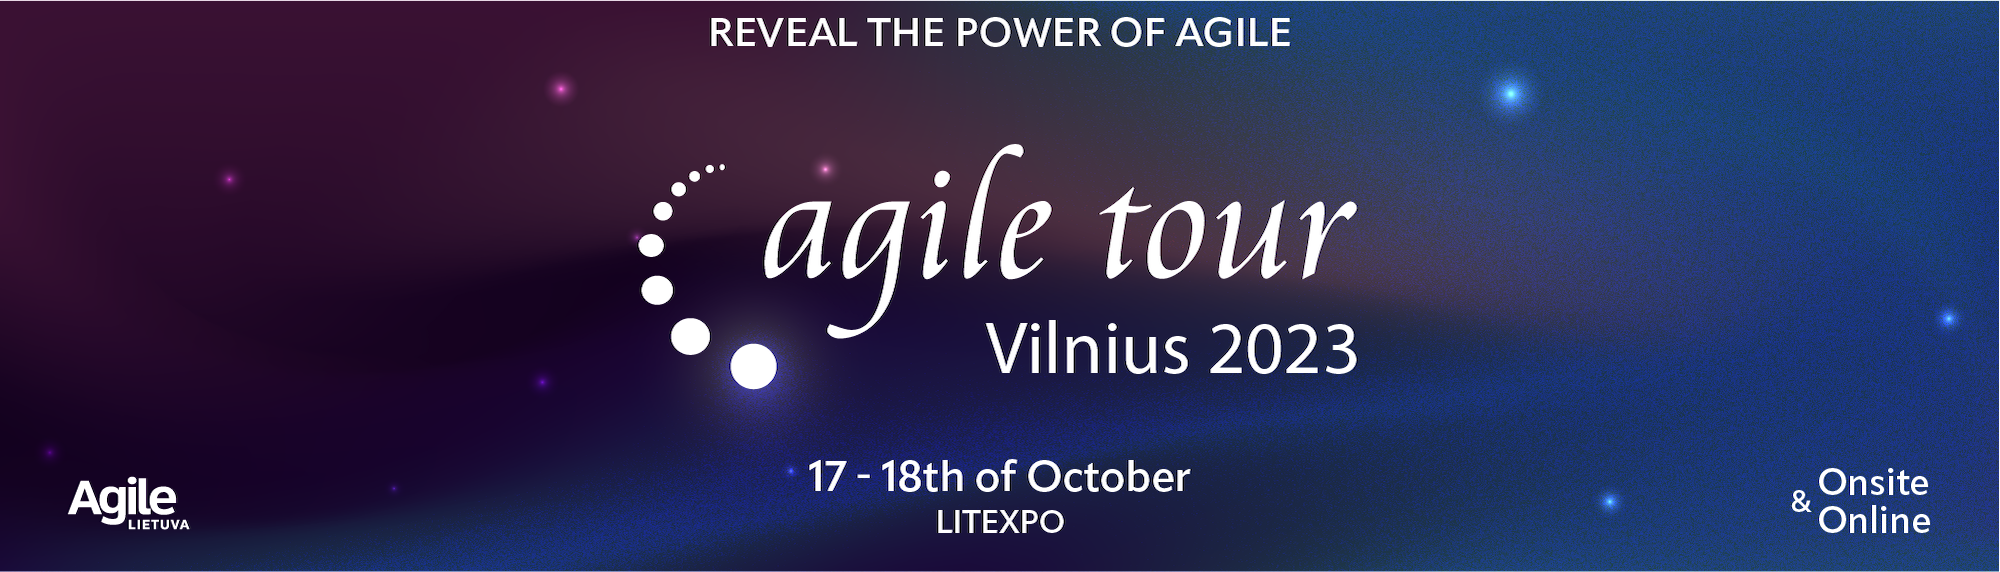 Partner event: Agile Tour Vilnius 2023 | IAPM